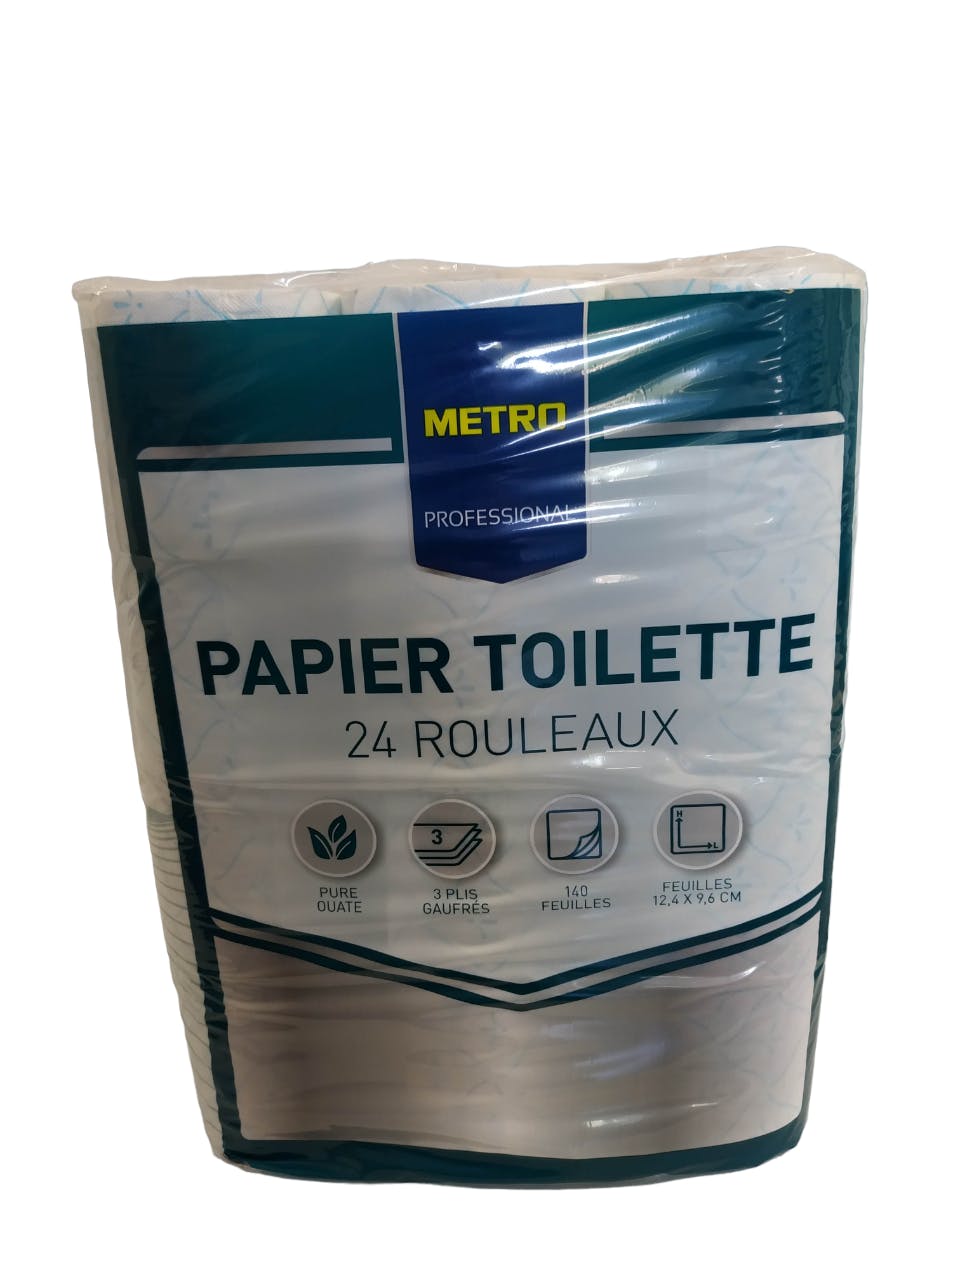 METRO PROFESSIONAL Papier toilette extra doux 140 feuilles x 24